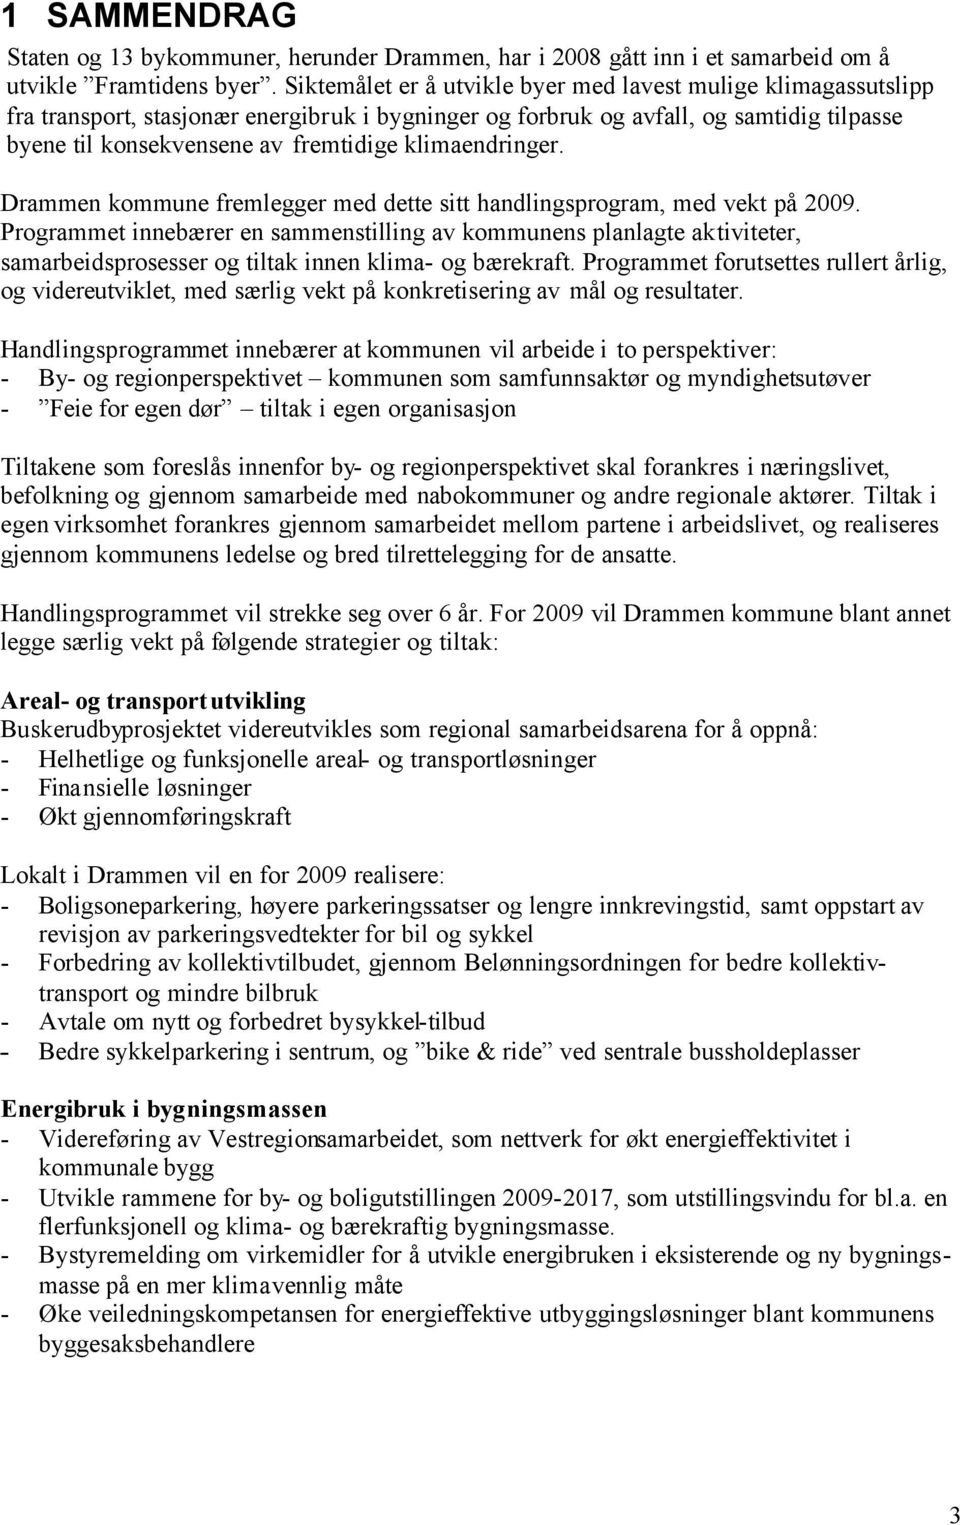 klimaendringer. Drammen kommune fremlegger med dette sitt handlingsprogram, med vekt på 2009.